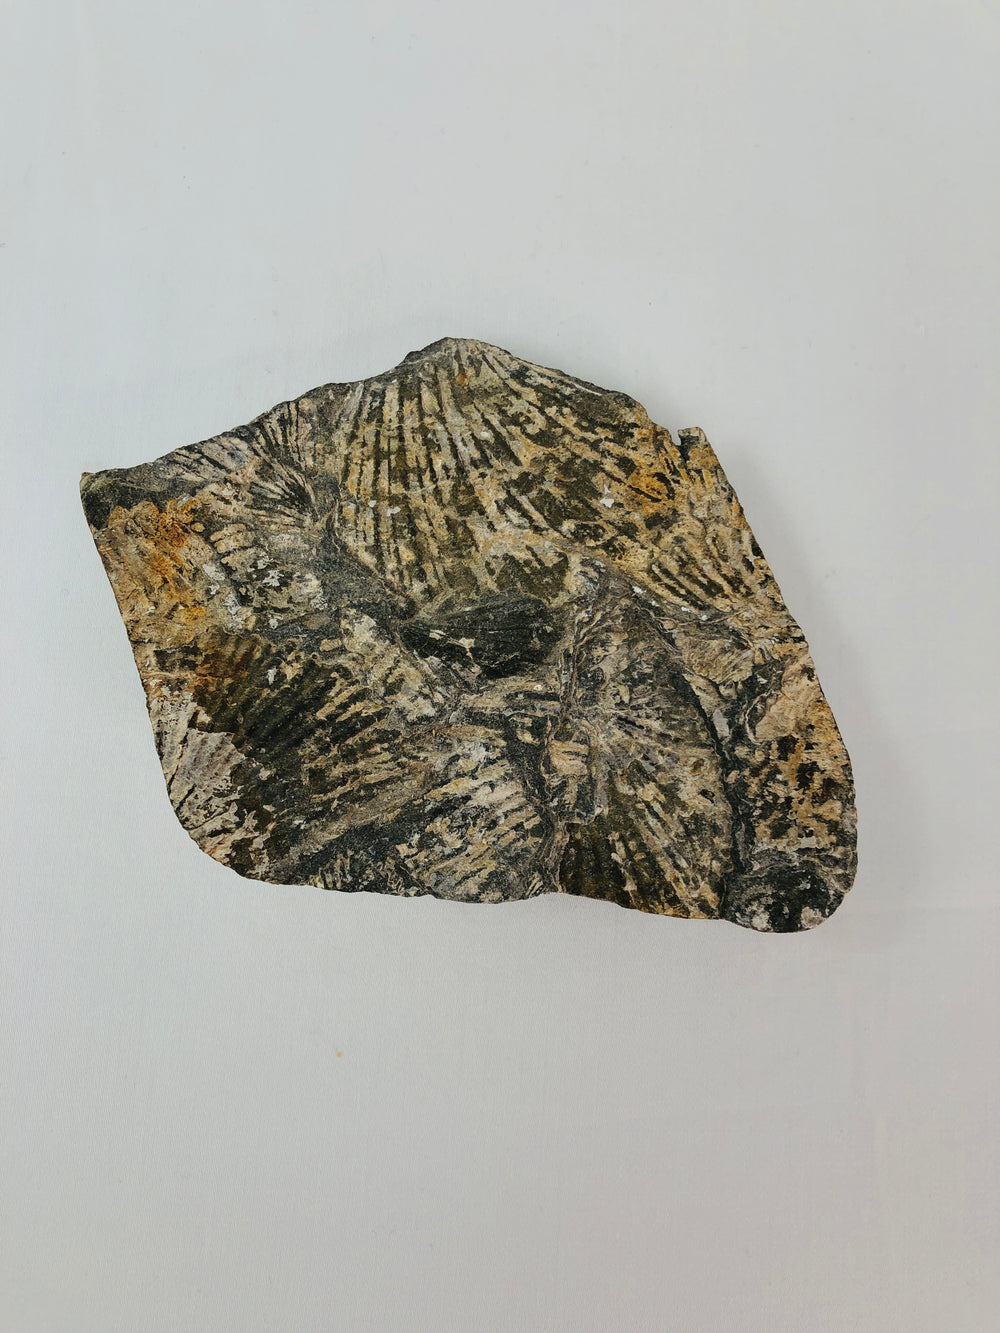 Fossil - Shells (15639)